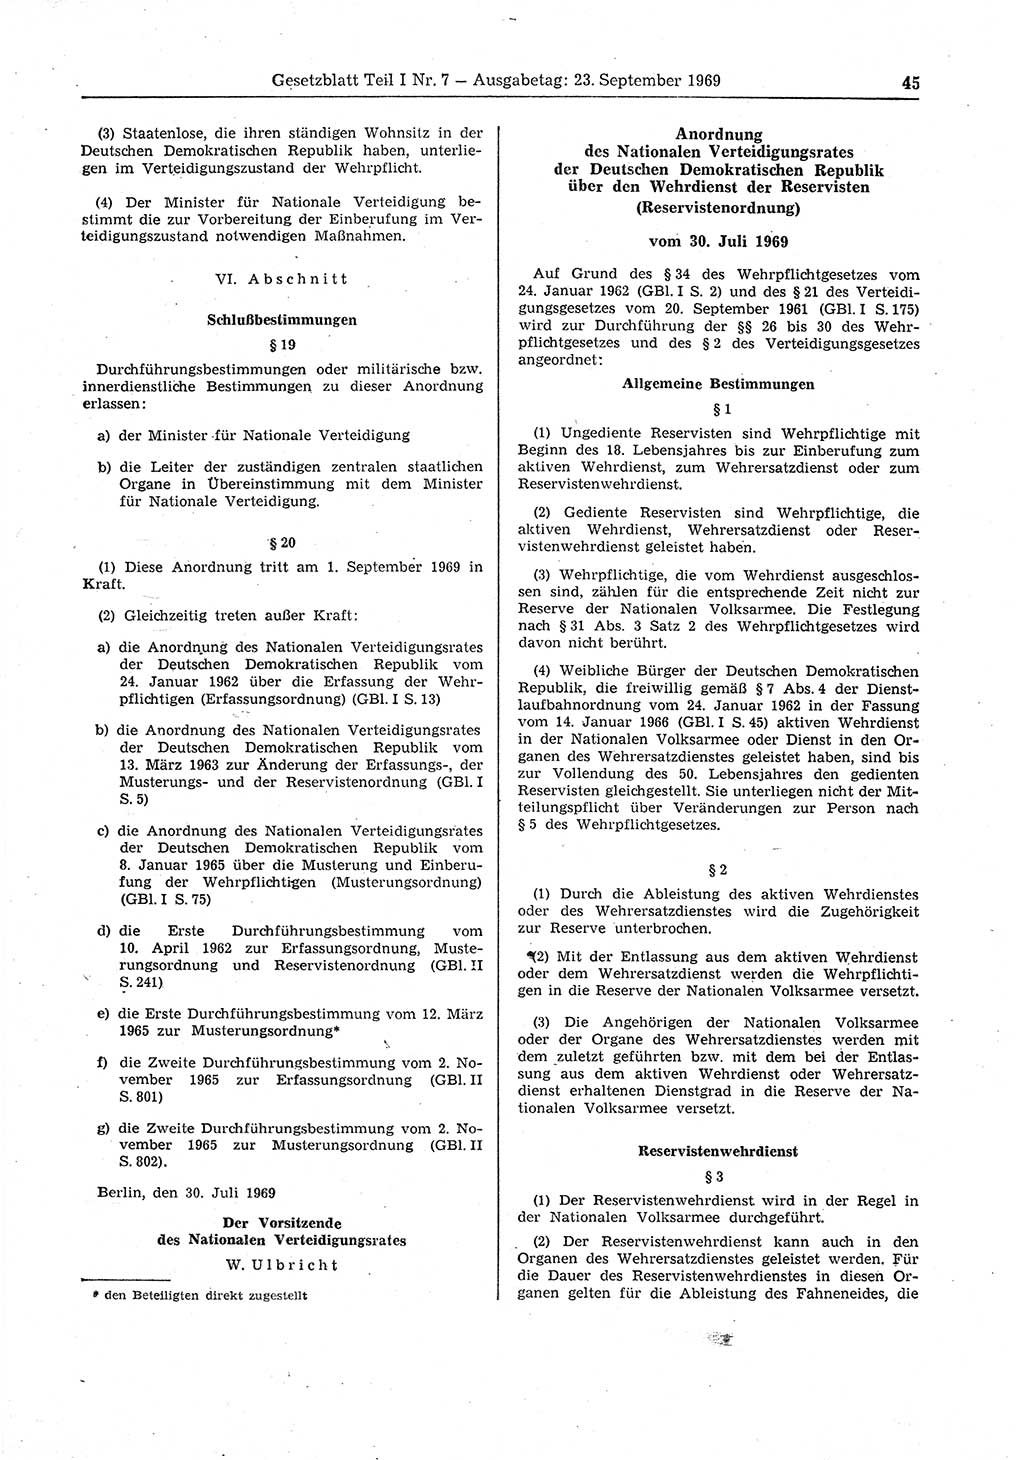 Gesetzblatt (GBl.) der Deutschen Demokratischen Republik (DDR) Teil Ⅰ 1969, Seite 45 (GBl. DDR Ⅰ 1969, S. 45)